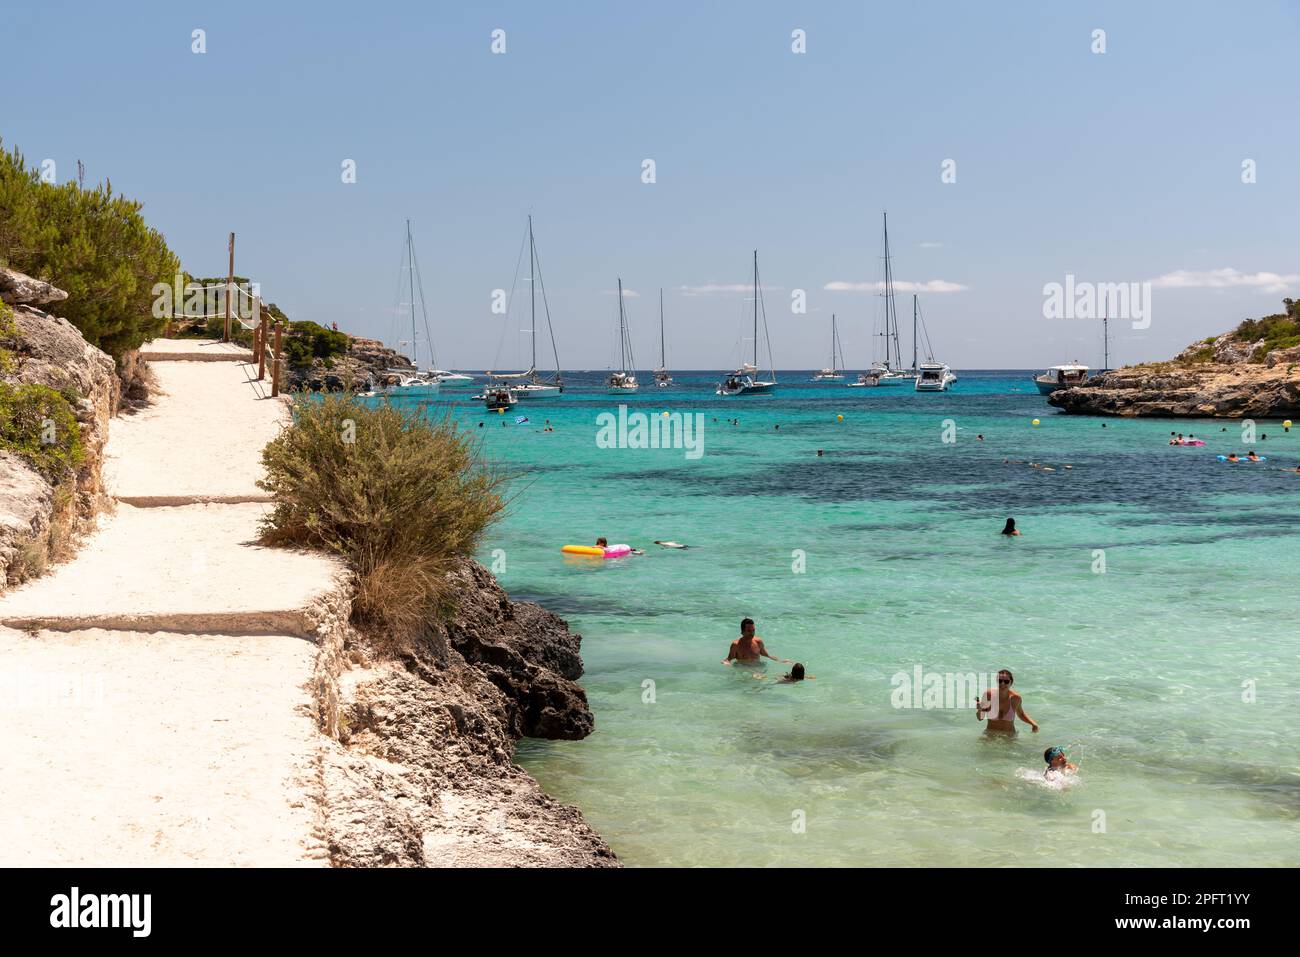 L'affascinante villaggio di pescatori di Port de Soller a Mallorca, Spagna, vanta una splendida spiaggia con acque cristalline, circondata da pittoreschi caffè e c. Foto Stock